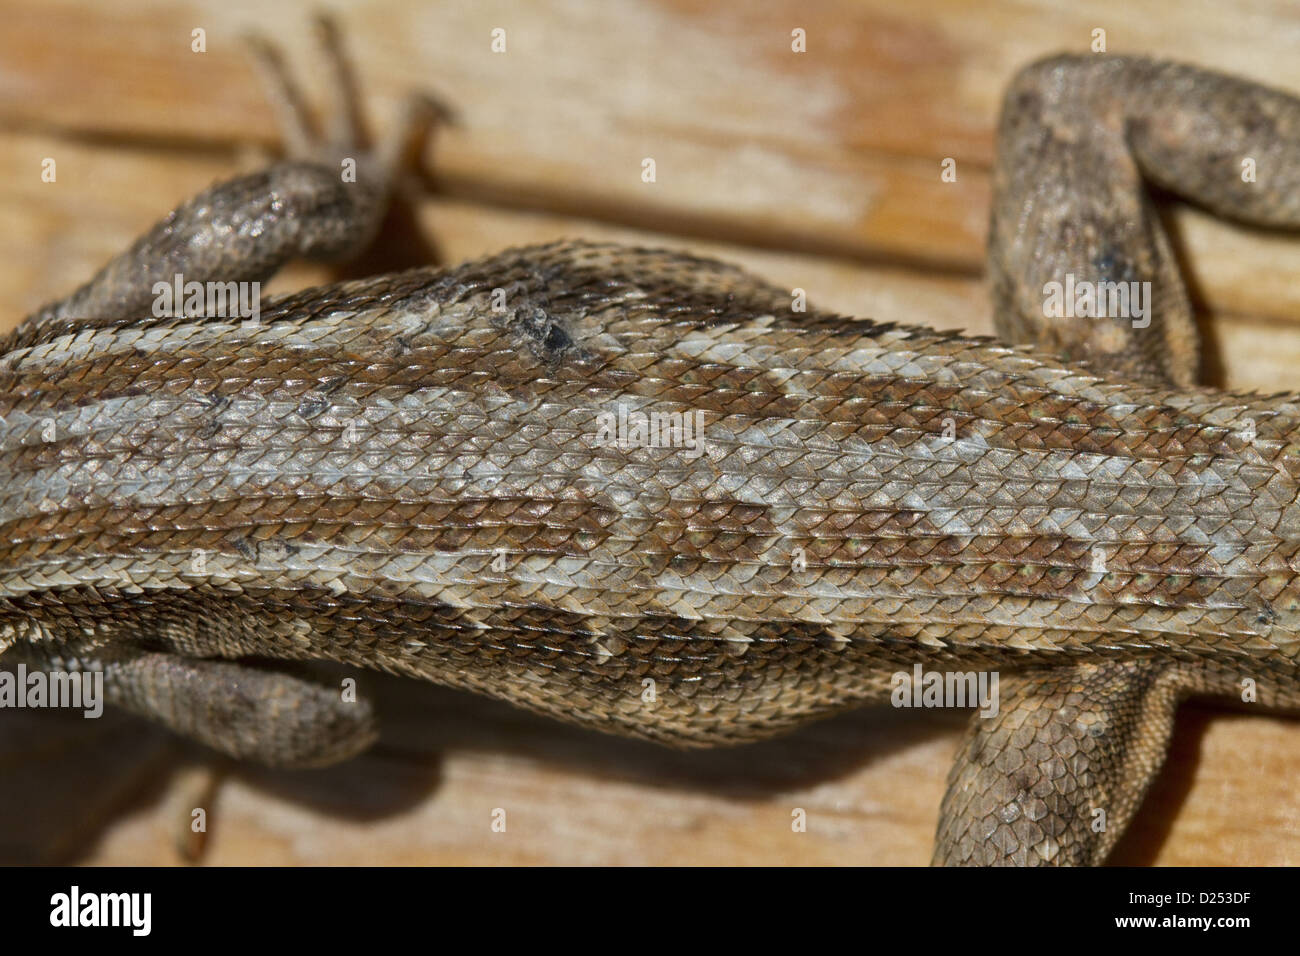 Sagebrush Lizard, male, Utah America Stock Photo